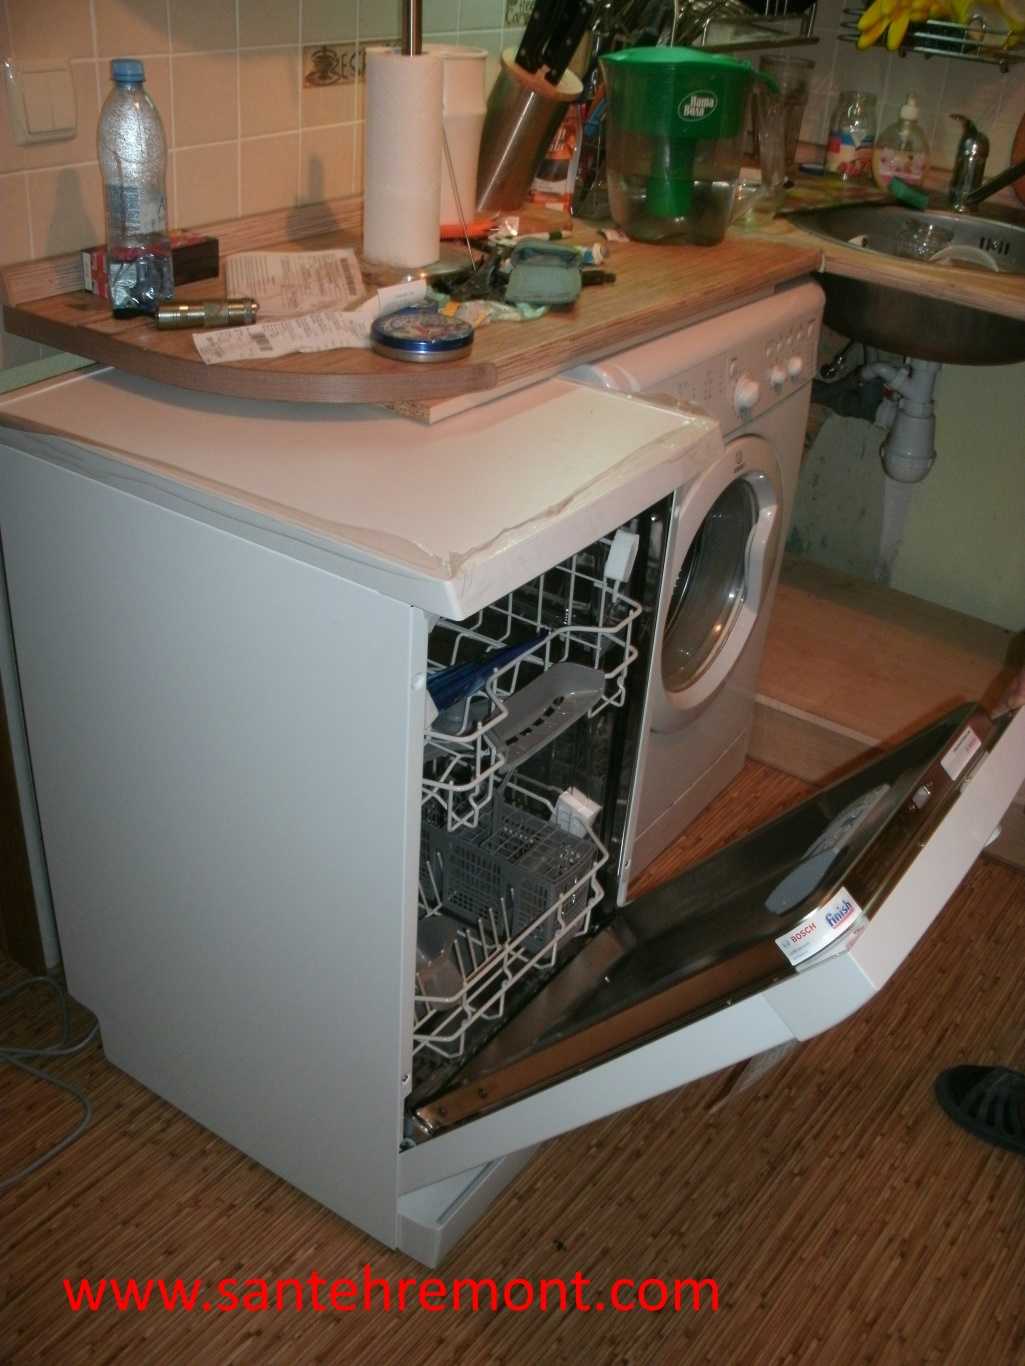 Как установить посудомоечную машину в готовую. Стопод посудомоечную машину. Крепление посудомоечной машины. Стол под посудомоечную машину. Короб для посудомоечной машины.